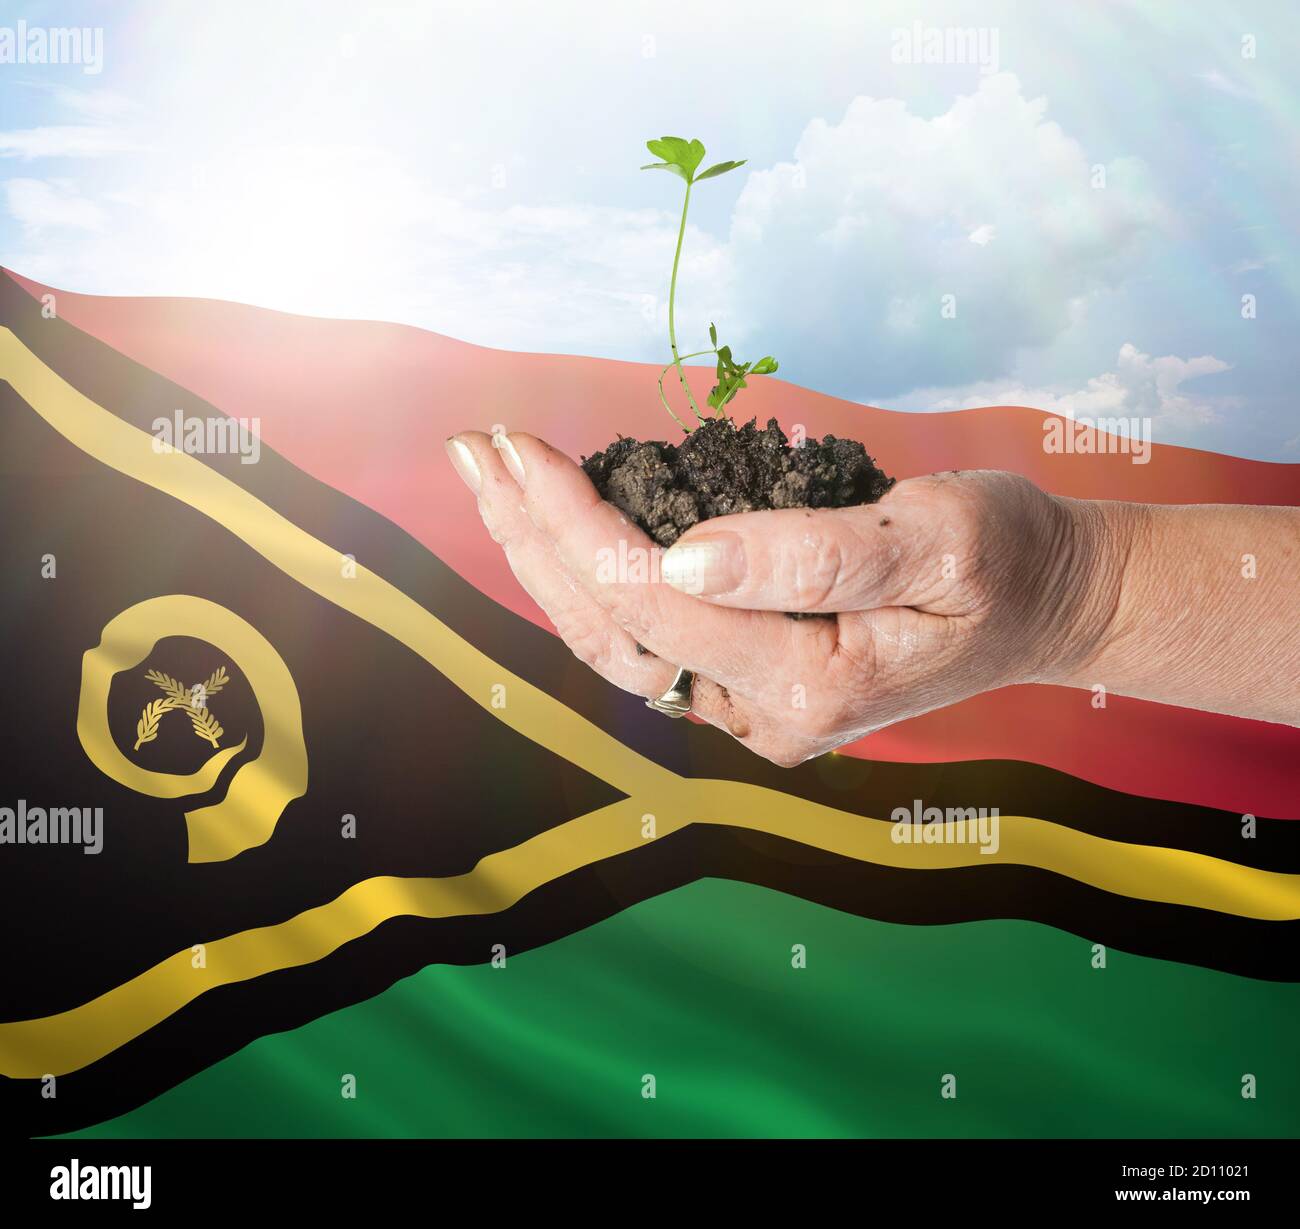 Vanuatu crecimiento y nuevo comienzo. Concepto de energía renovable verde y ecología. Mano sosteniendo planta joven. Foto de stock